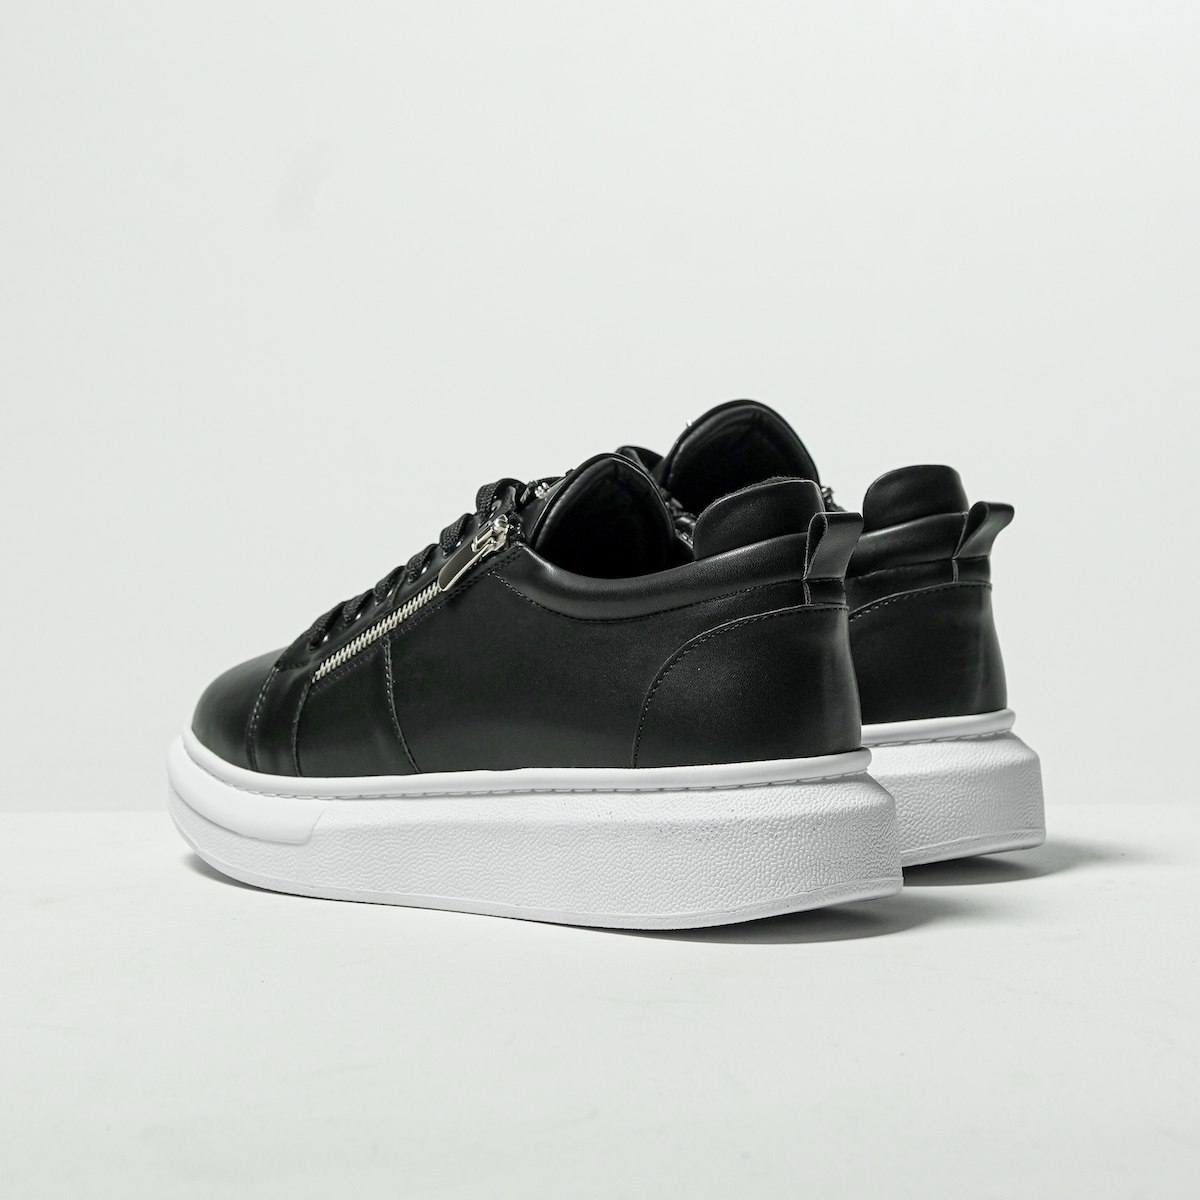 Chunky Sneakers Designer Zipper Shoes Black-White | Martin Valen